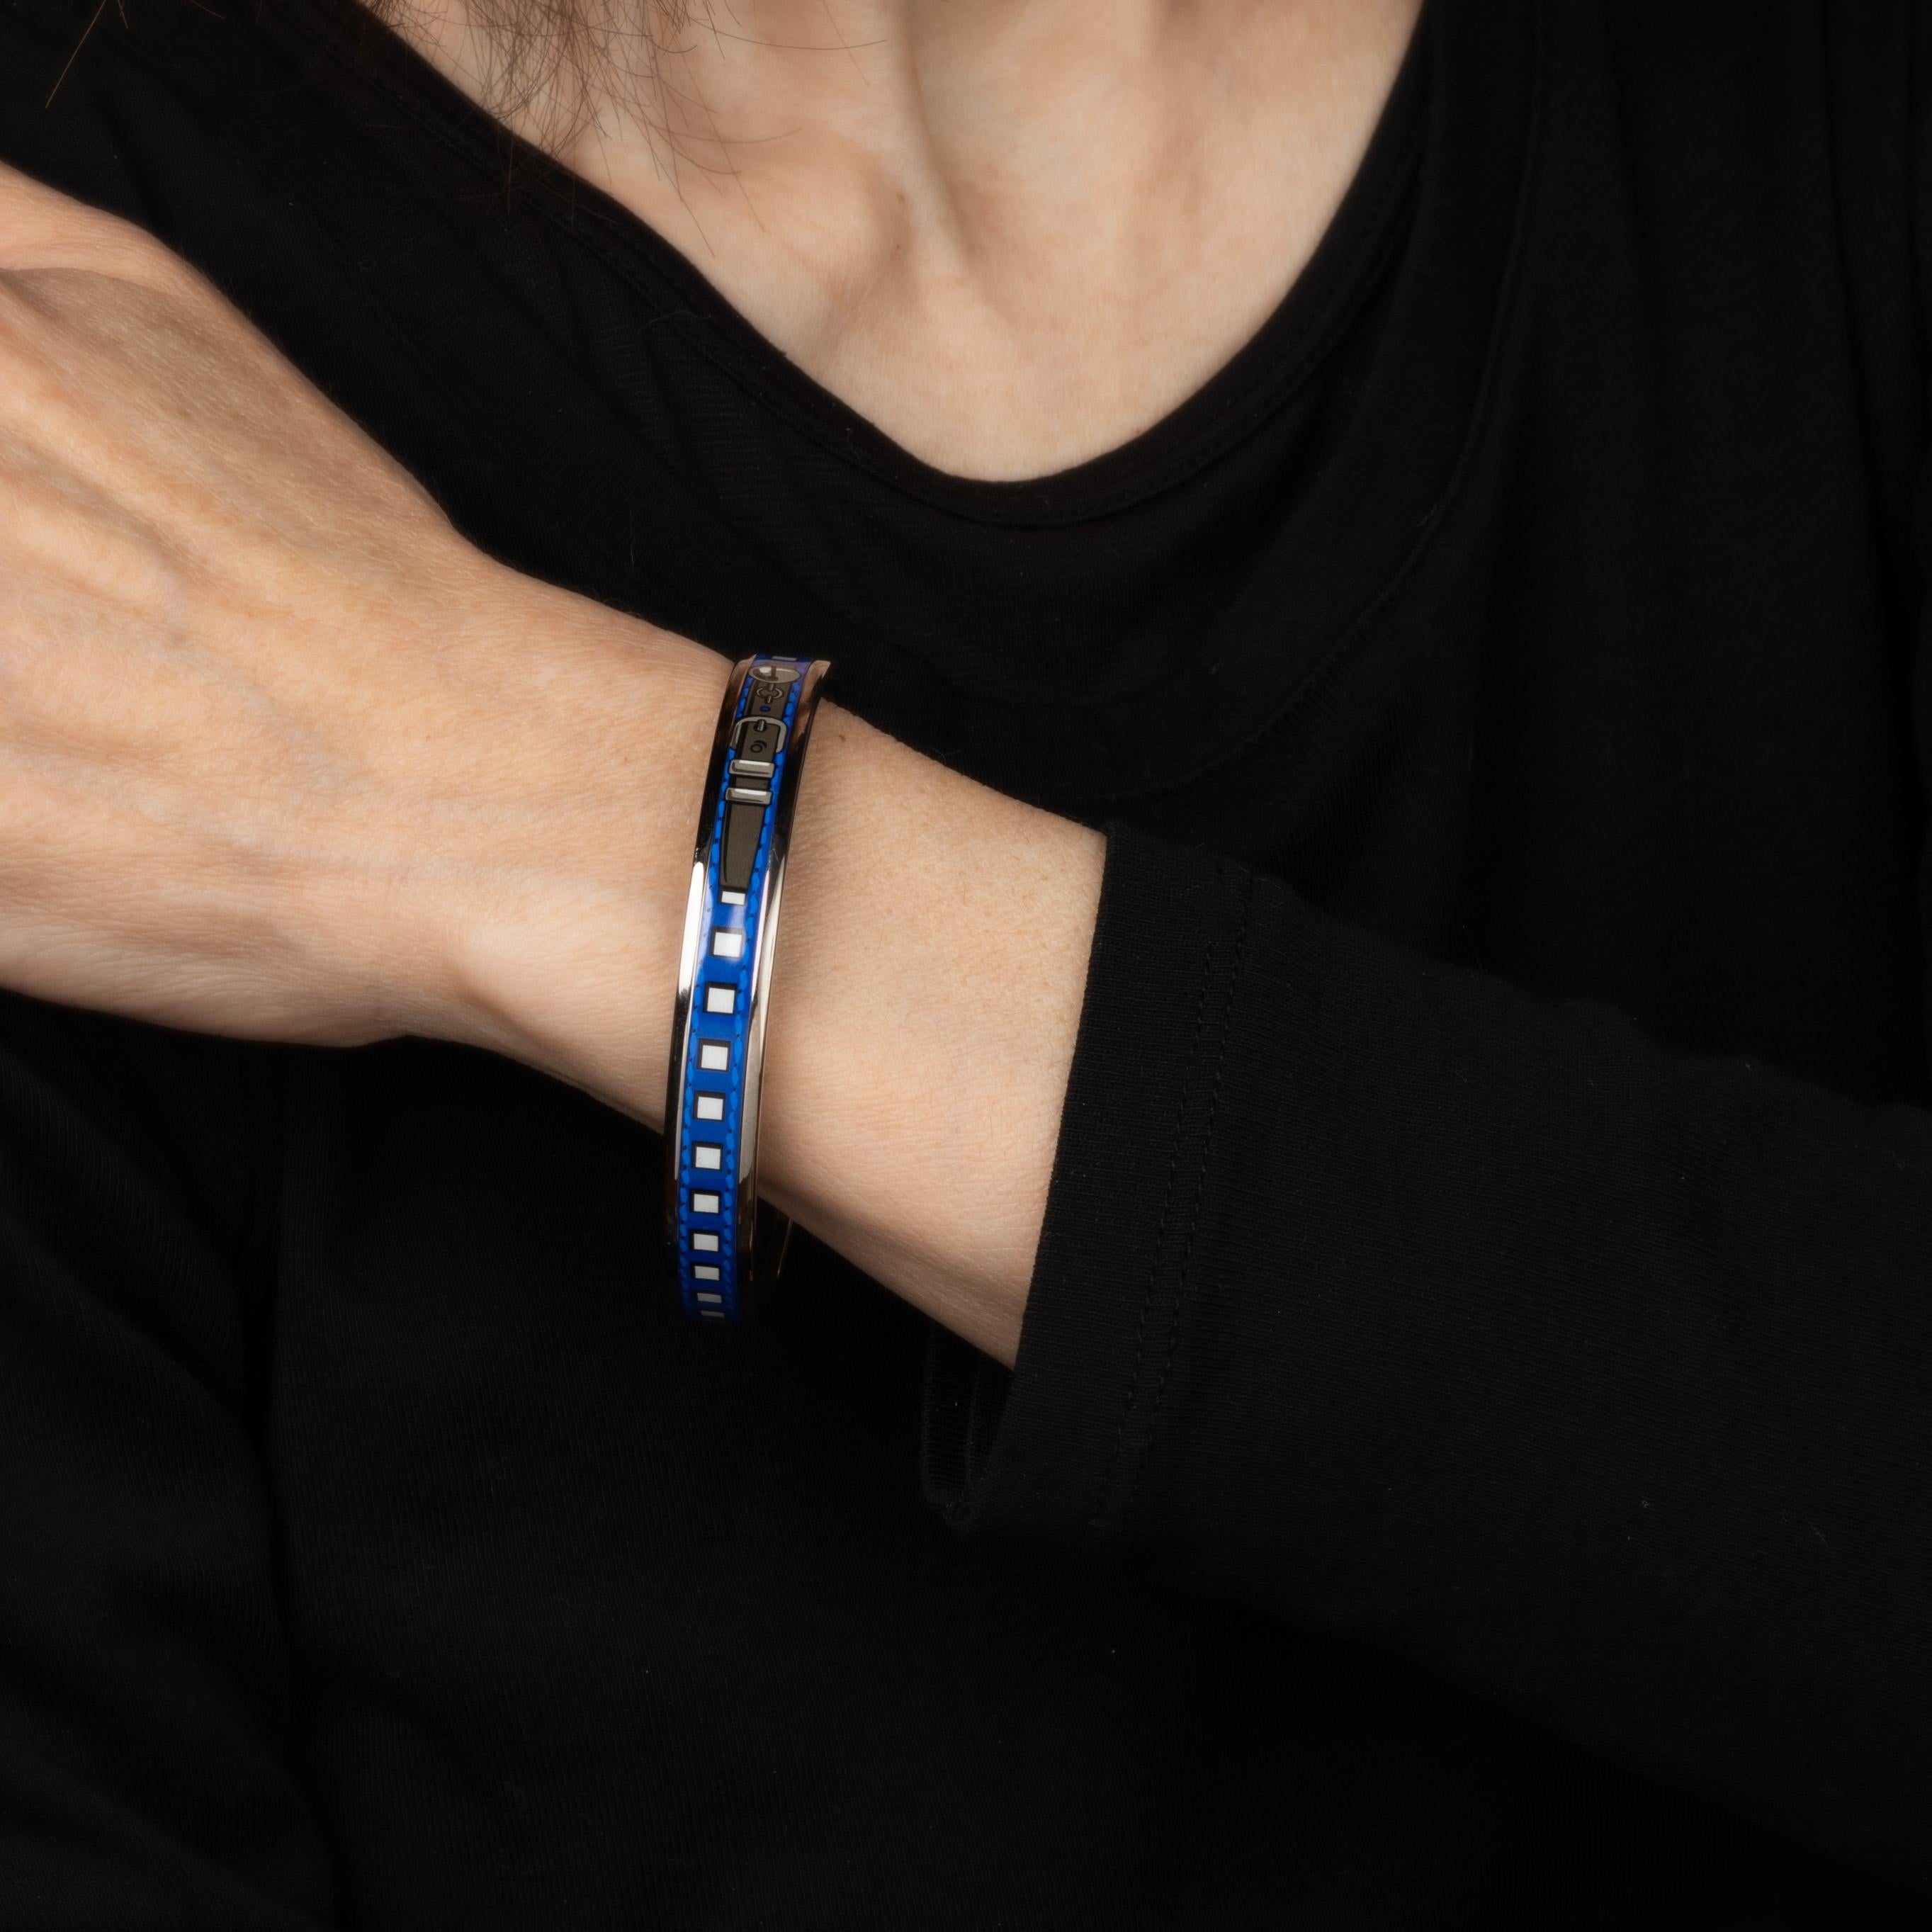 Vue d'ensemble :

Bracelet d'occasion Hermes en émail avec un motif de boucle et un fond bleu à motifs carrés. 

Le bracelet étroit de 0,35